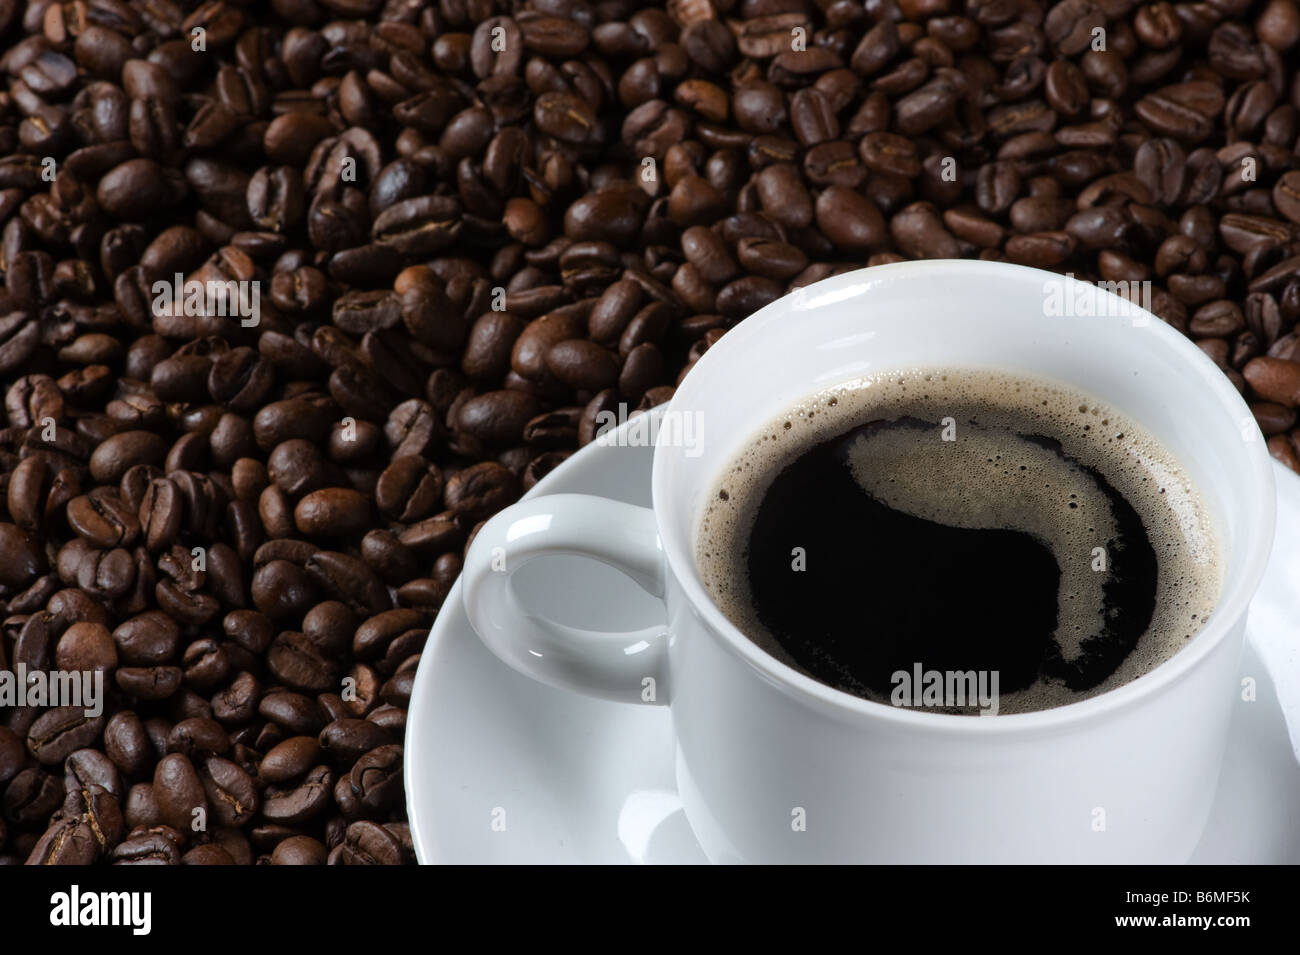 Libre d'une tasse de café frais servis sur une plaque recouverte de grains de café fraîchement torréfié Banque D'Images